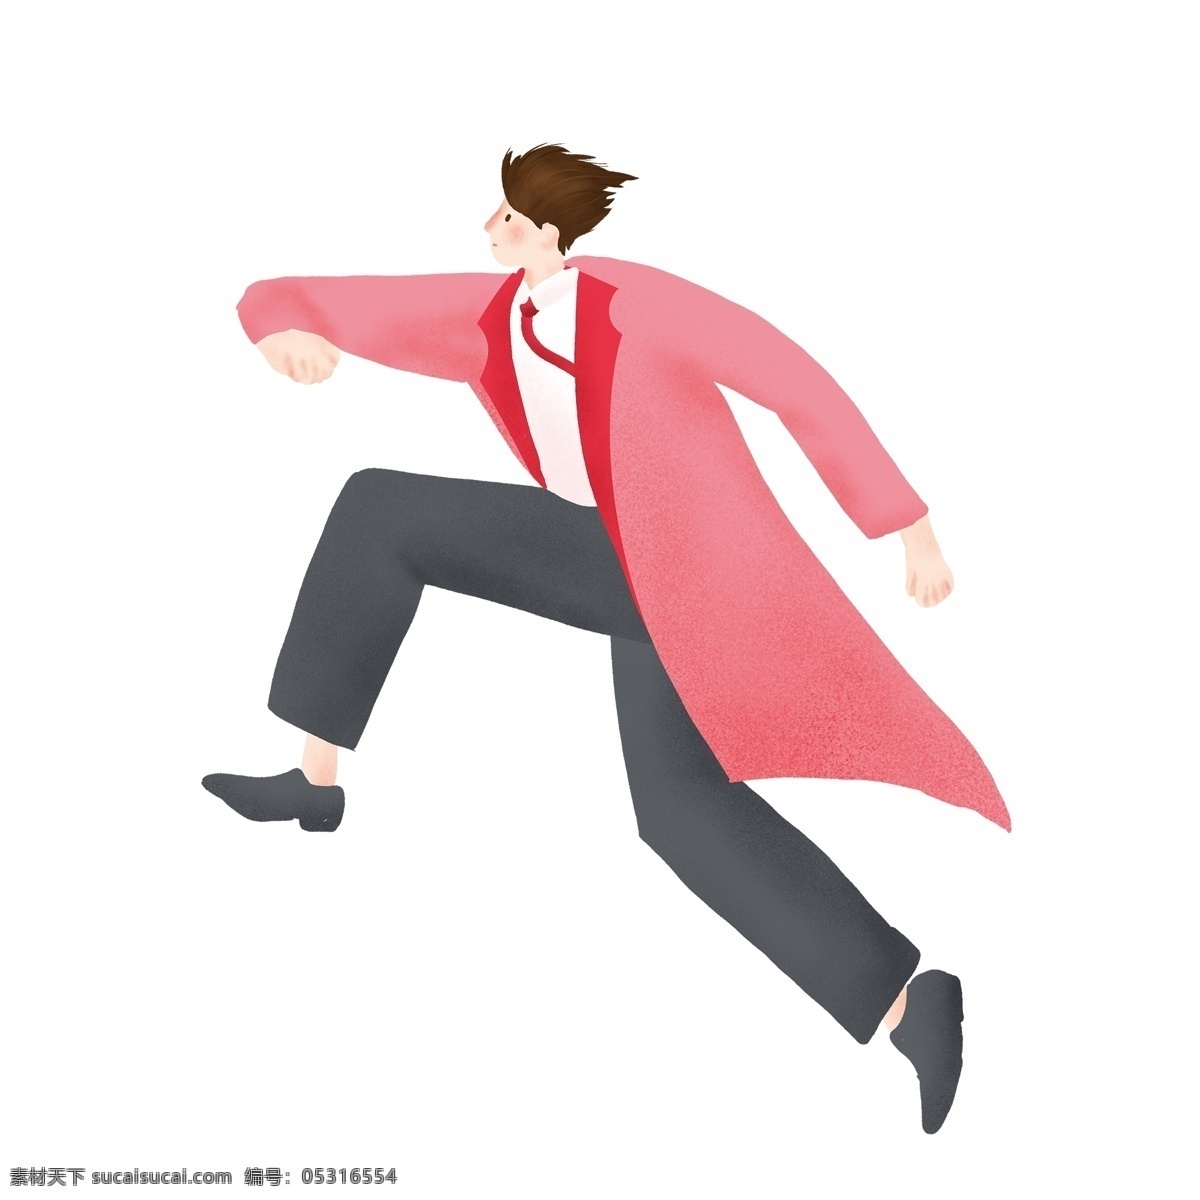 手绘 卡通 奔跑 人物 图案 元素 红衣人物 设计元素 创意元素 手绘元素 psd元素 免扣元素 跑步